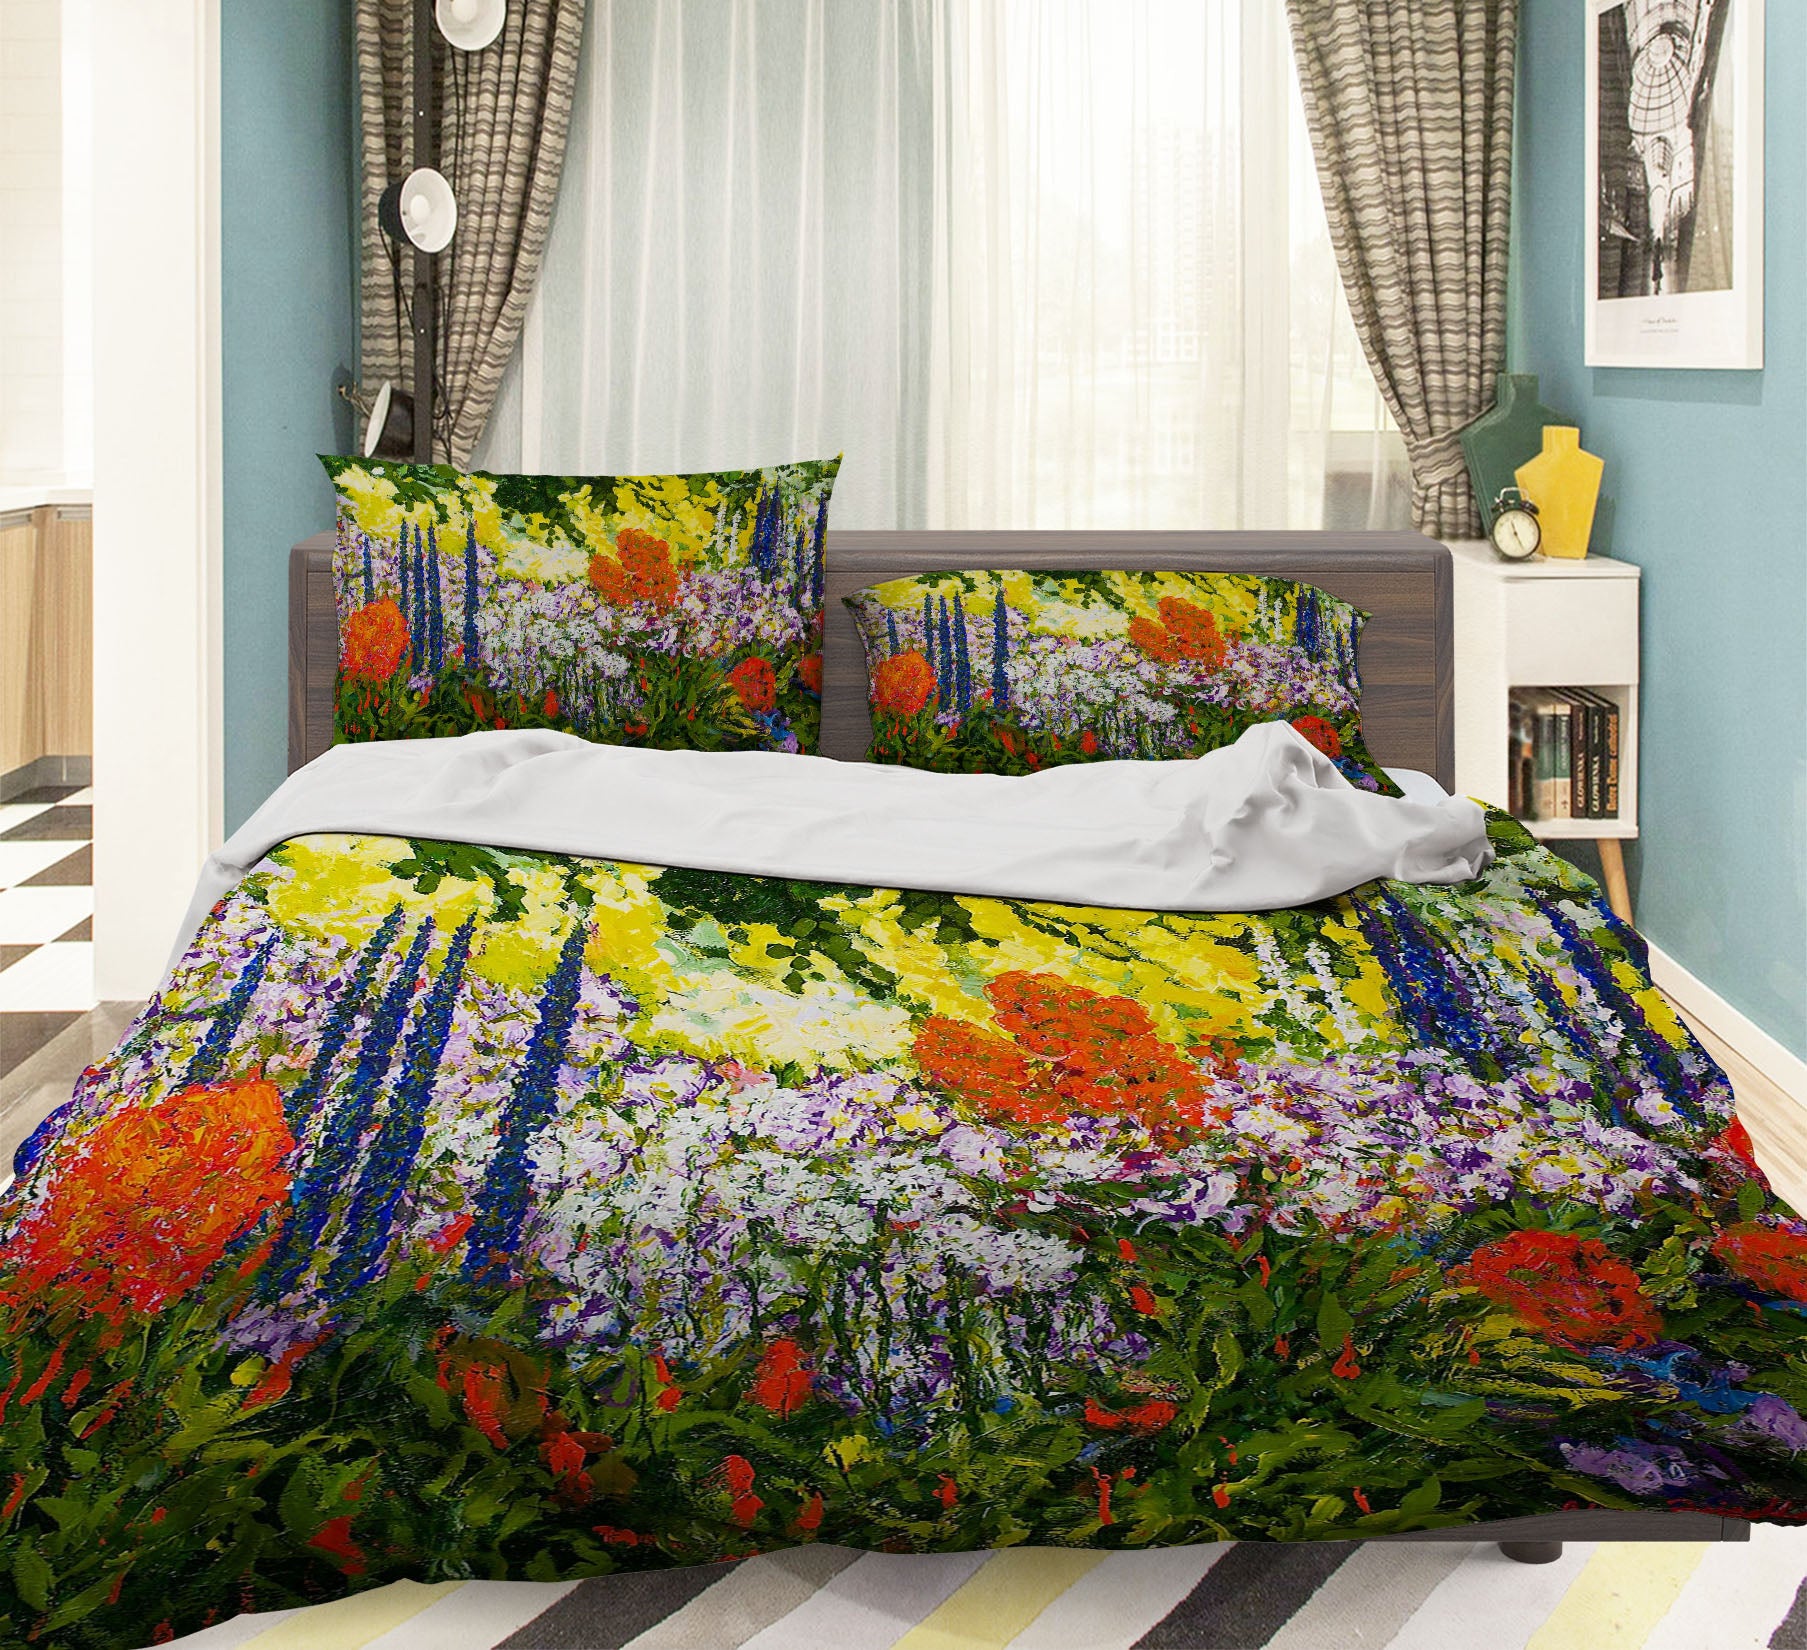 3D Lush Grass 1047 Allan P. Friedlander Bedding Bed Pillowcases Quilt